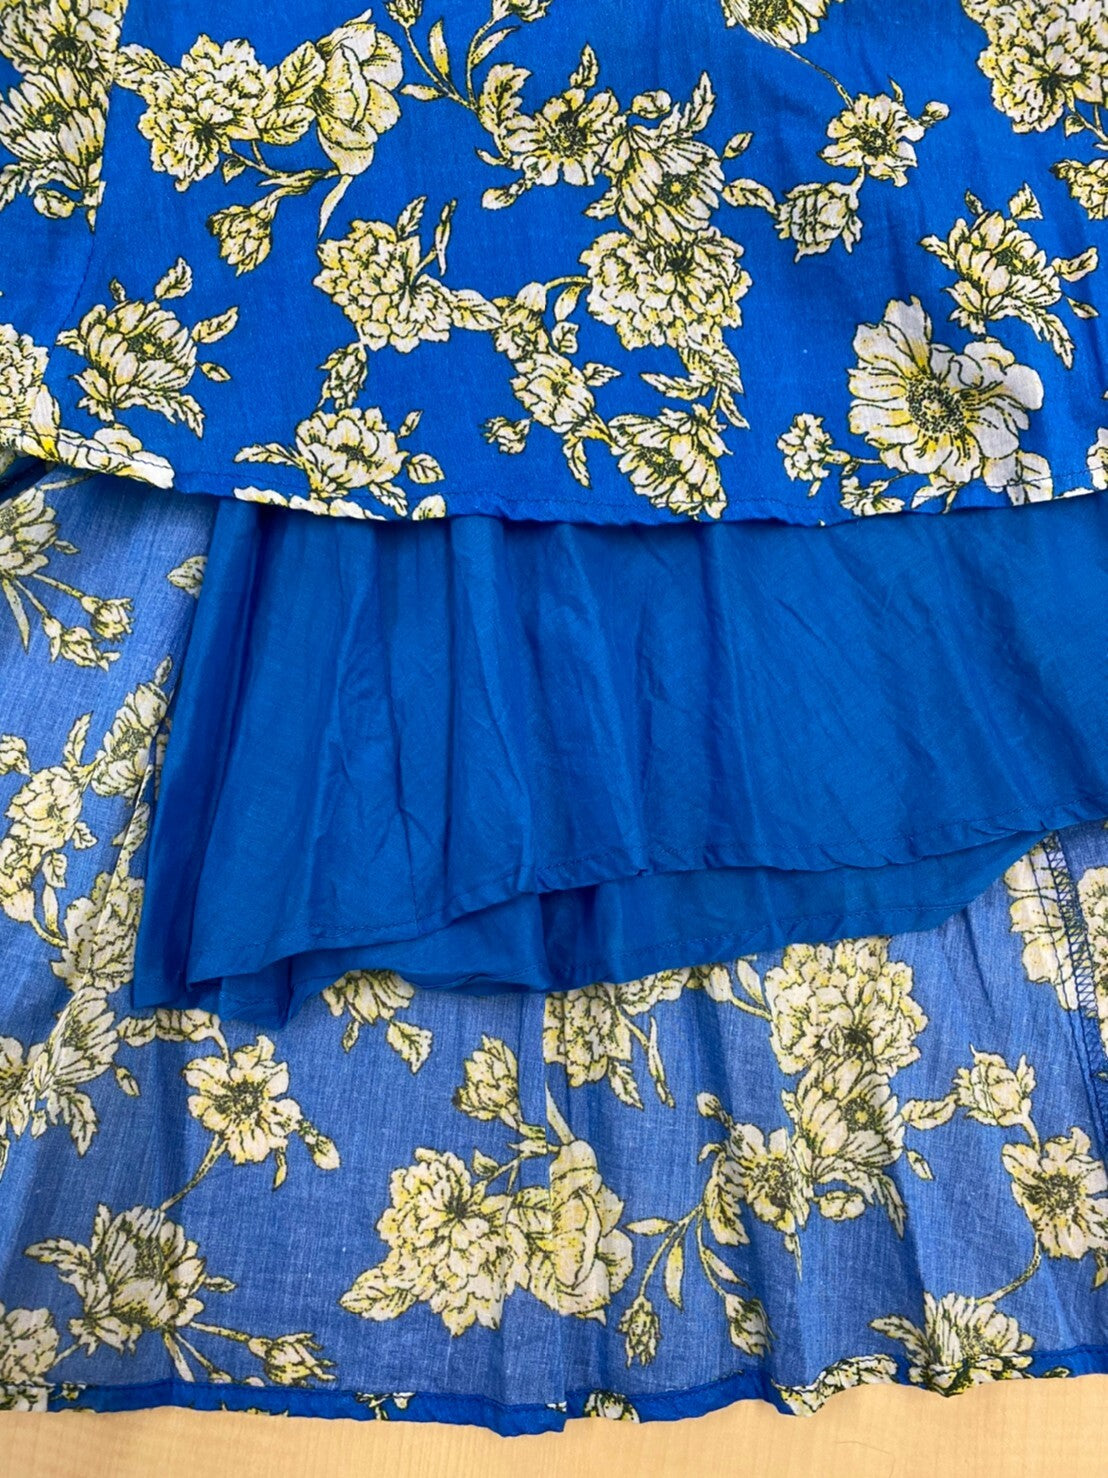 Titilate Valet (TEVALT) Flower Print Cotton Voile Long Flared Skirt